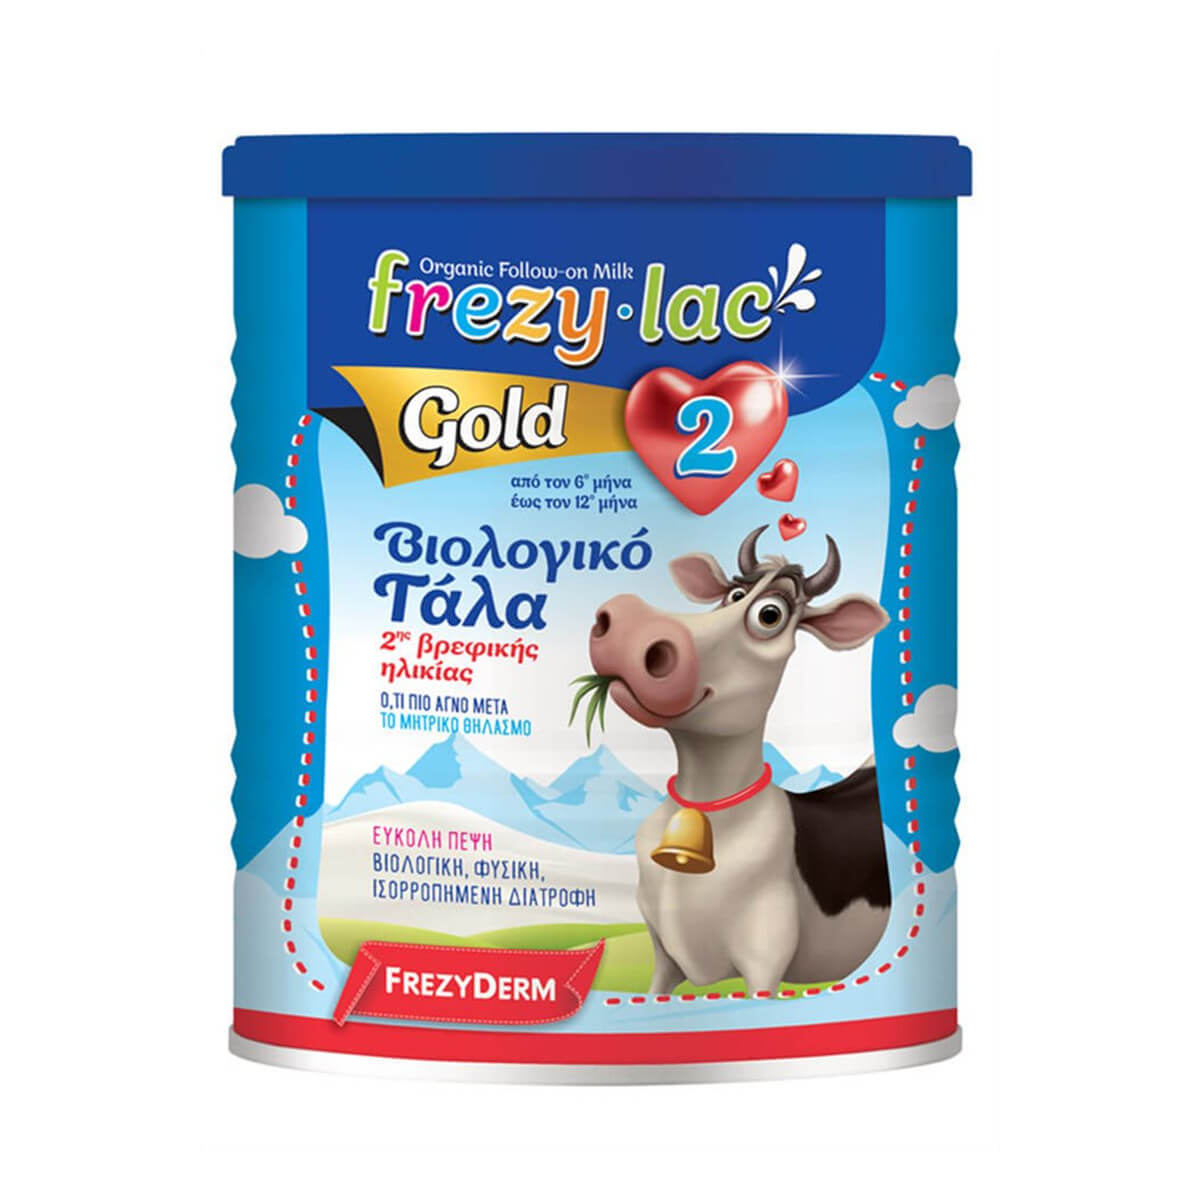 Frezyderm Frezylac Gold 2 Βιολογικό Αγελαδινό Γάλα Από Τον 6ο Μήνα Έως Και τον 12ο Μήνα - 400gr